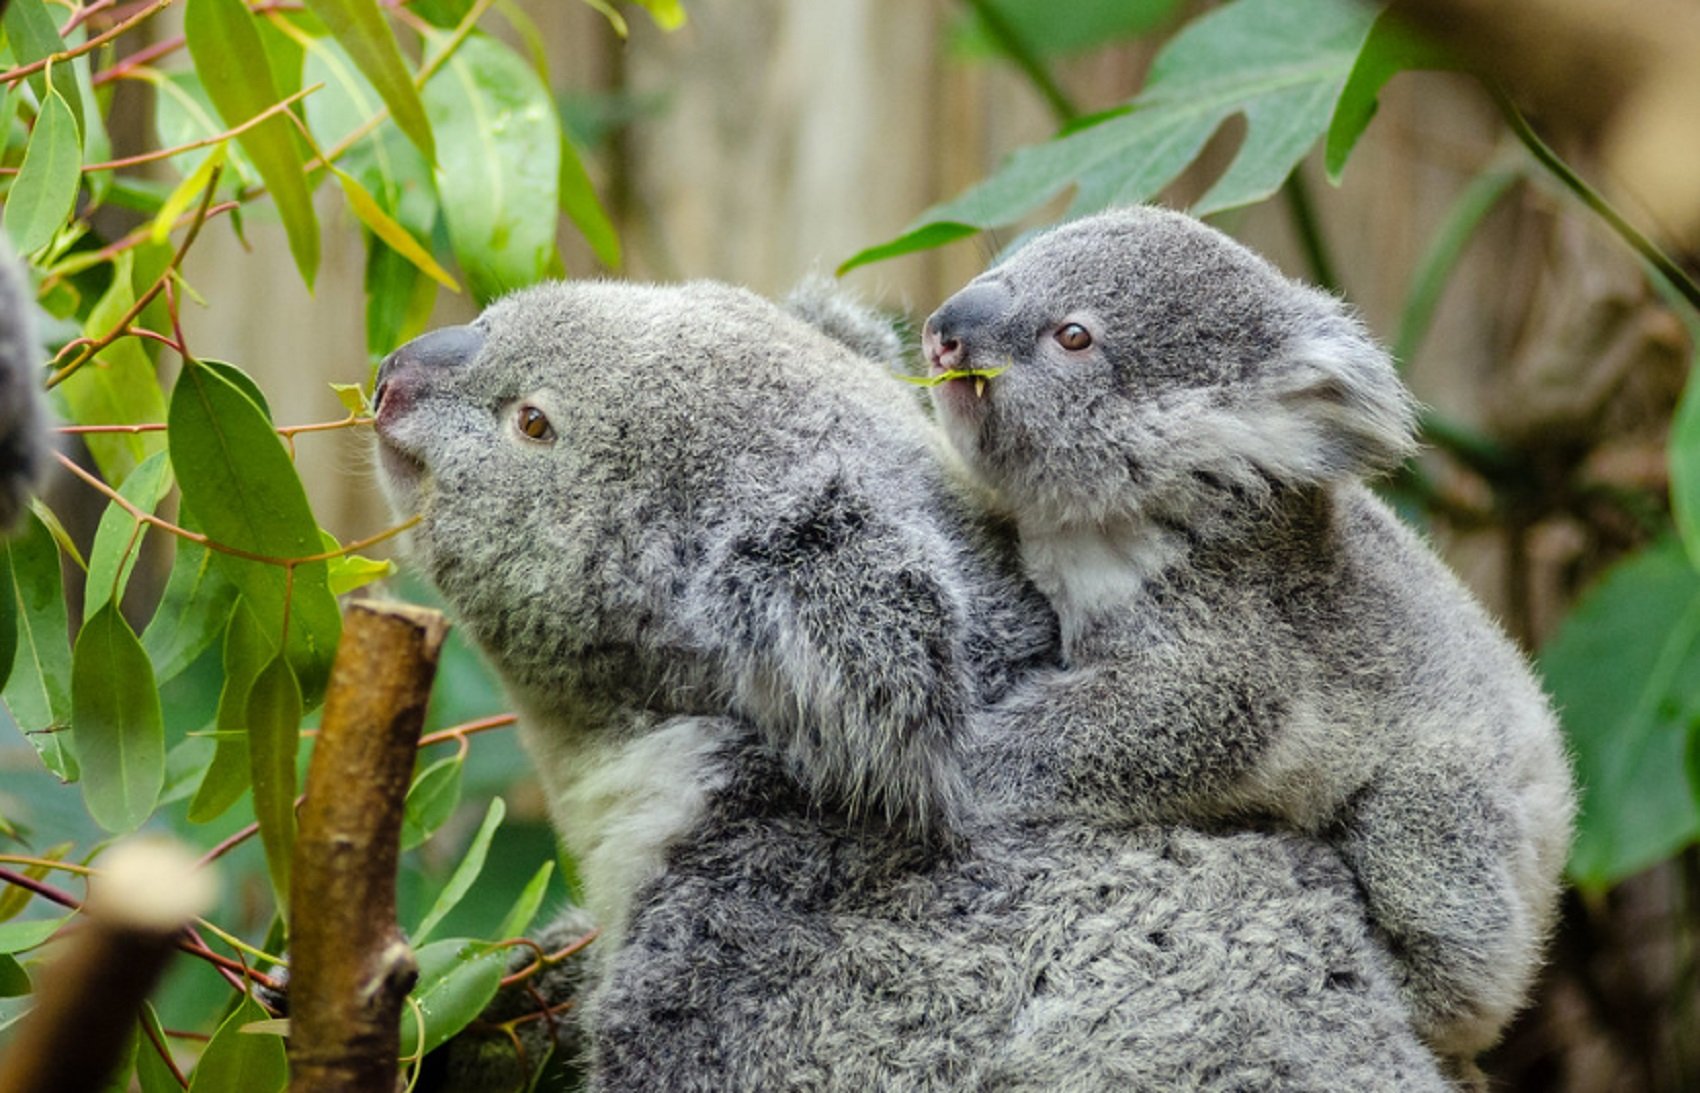 80.000 ejemplares: el koala podría estar "funcionalmente" extinguido